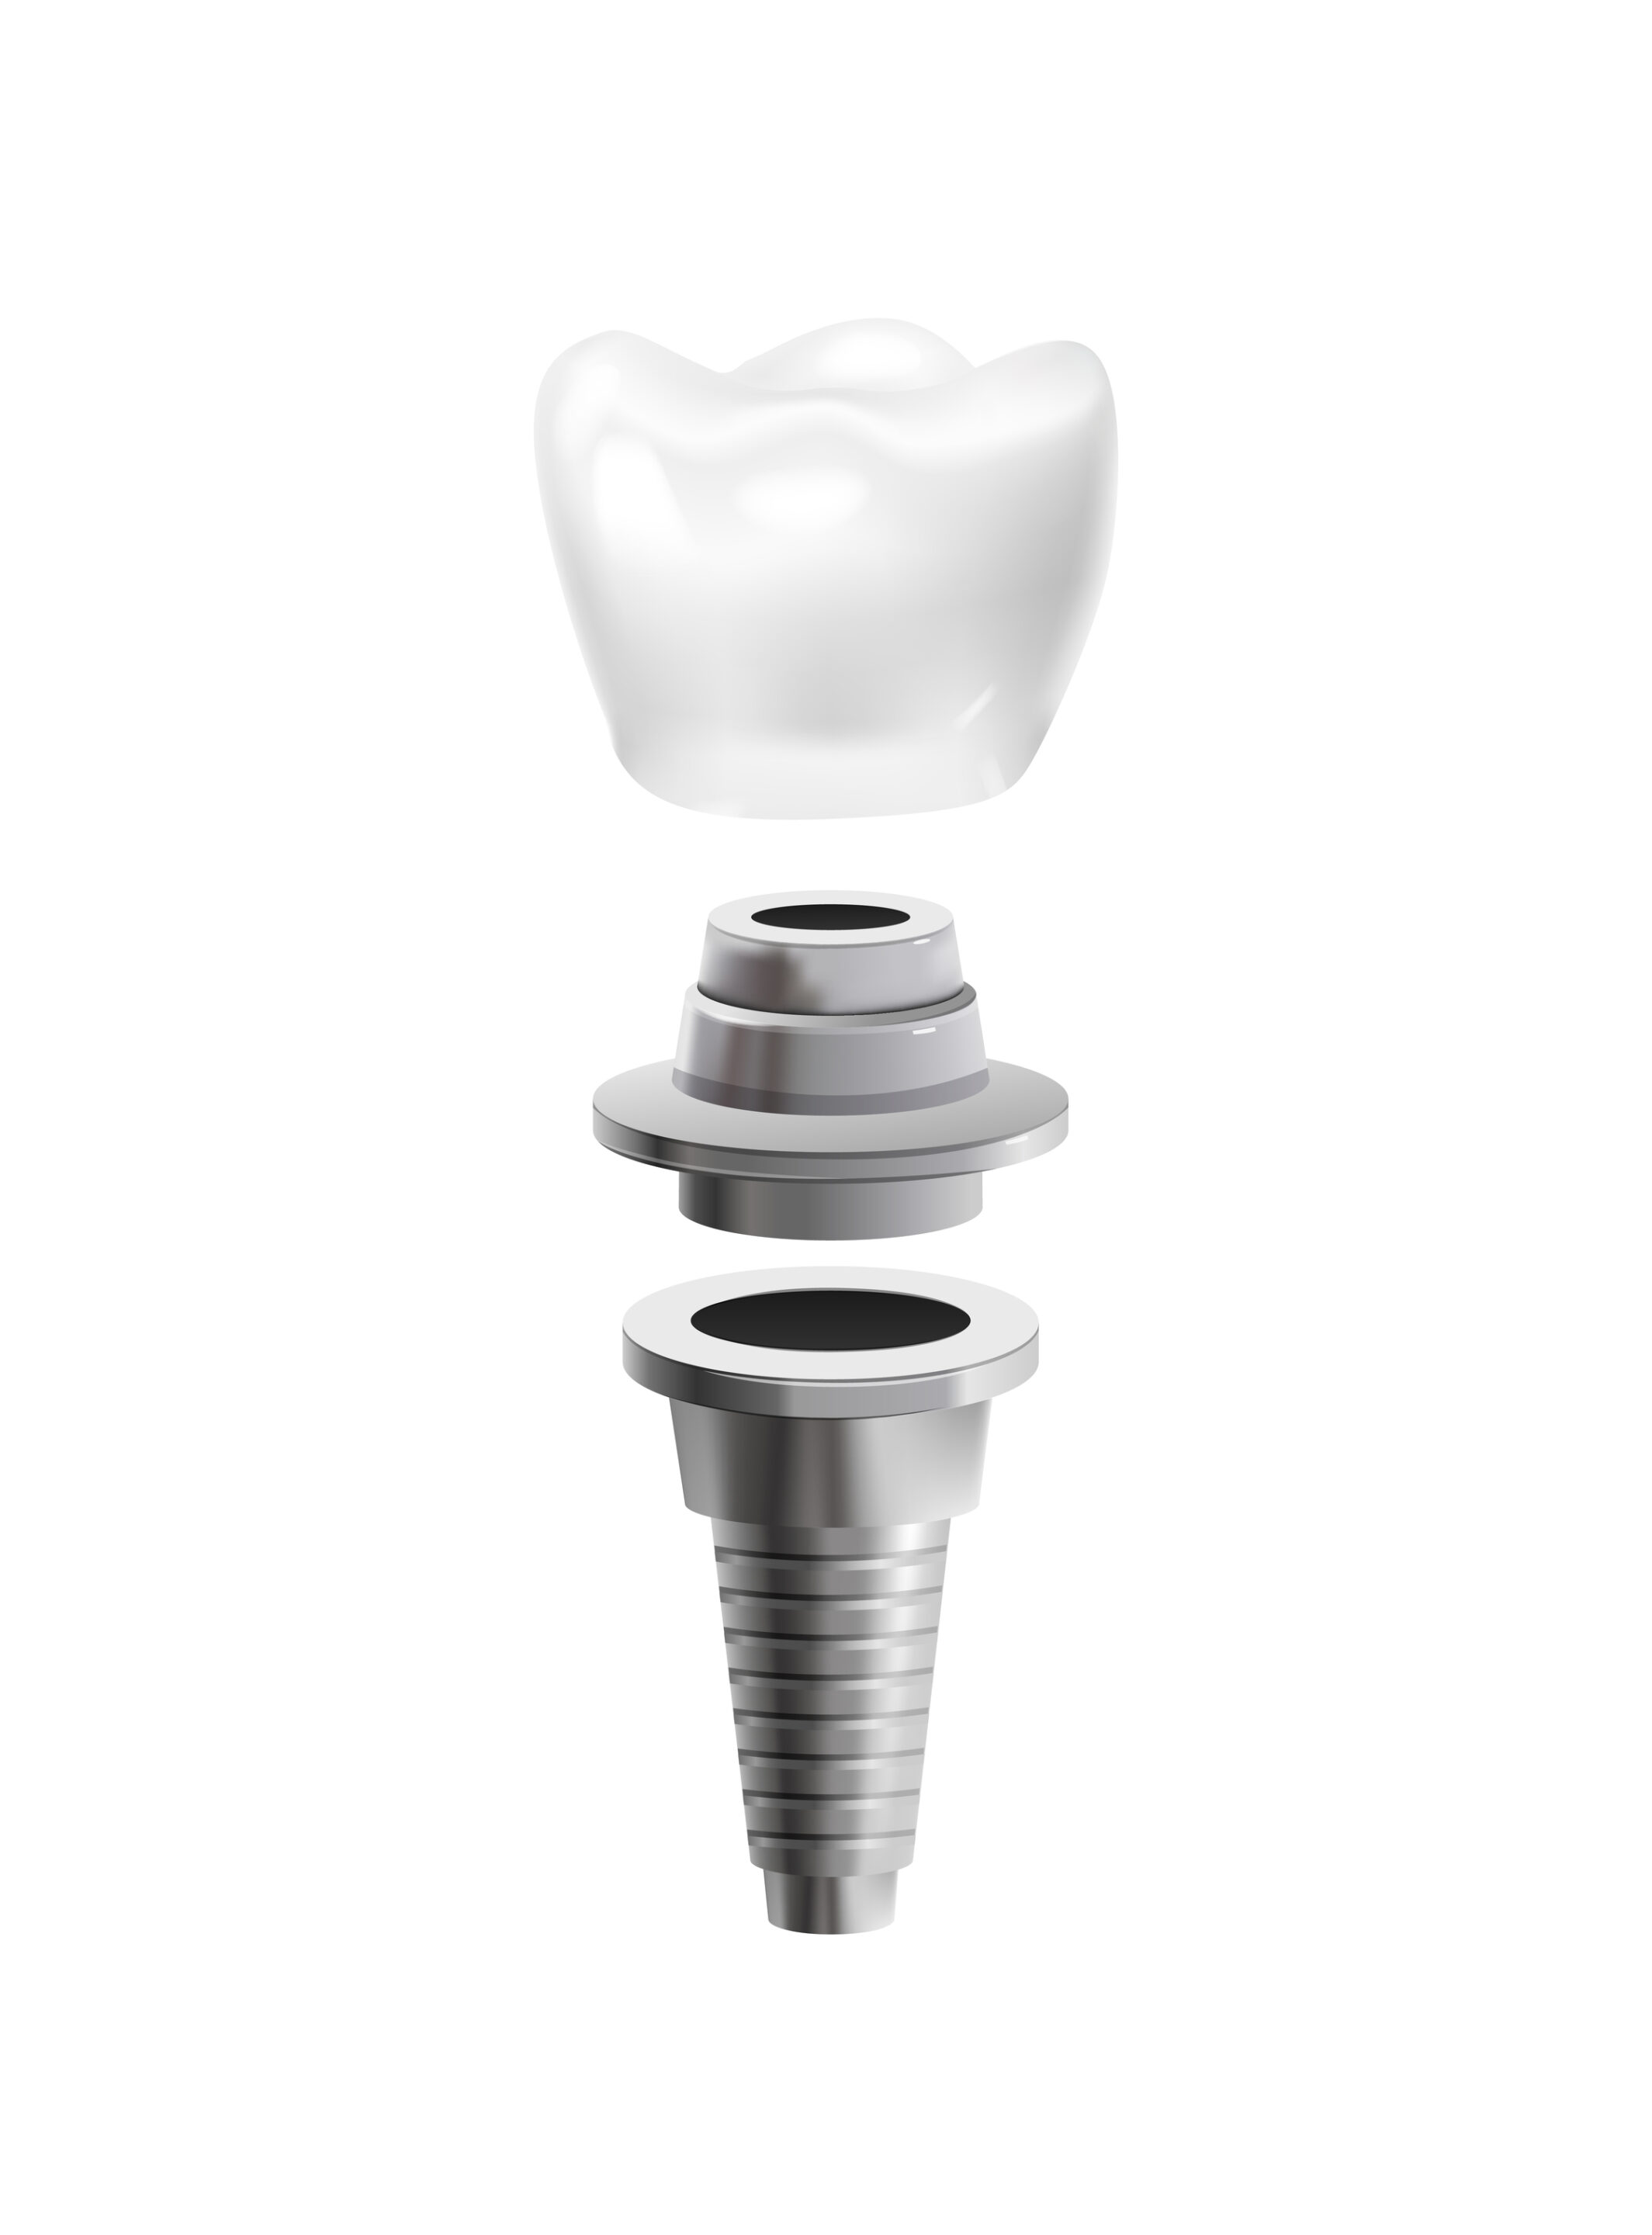 Dental crown on implant